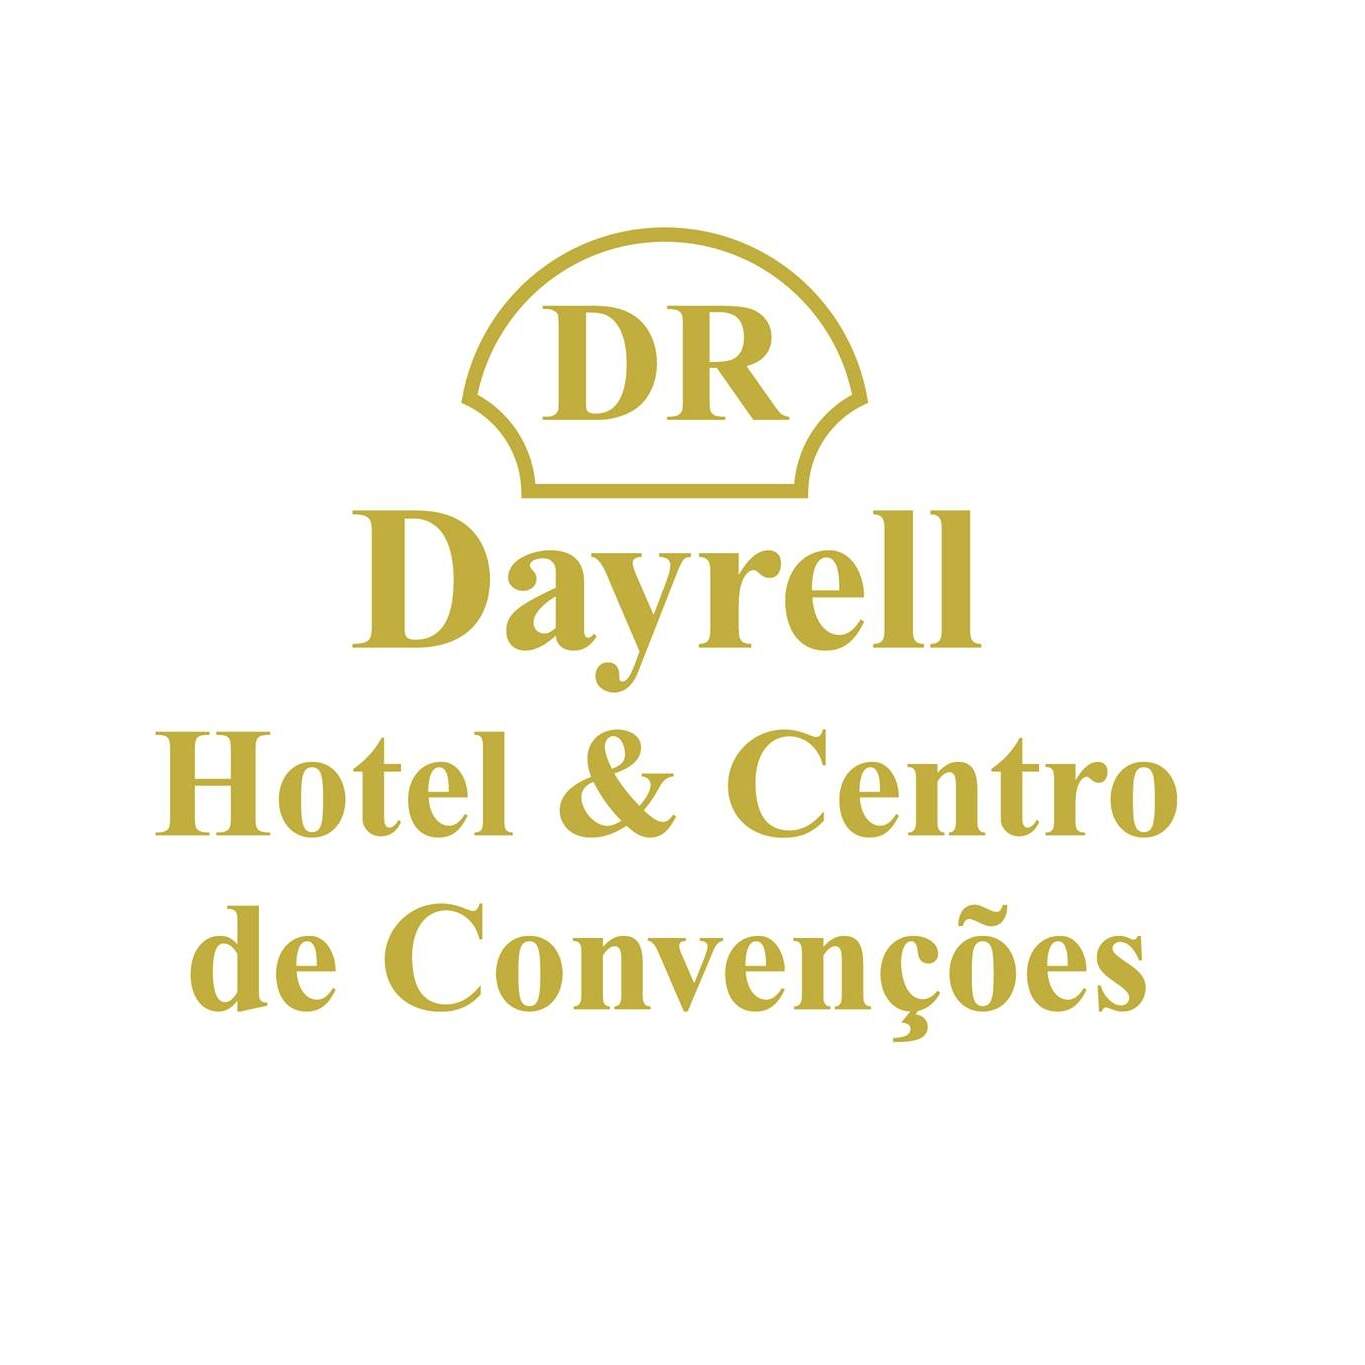 Dayrell Hotel & Centro de Convenções - Logo